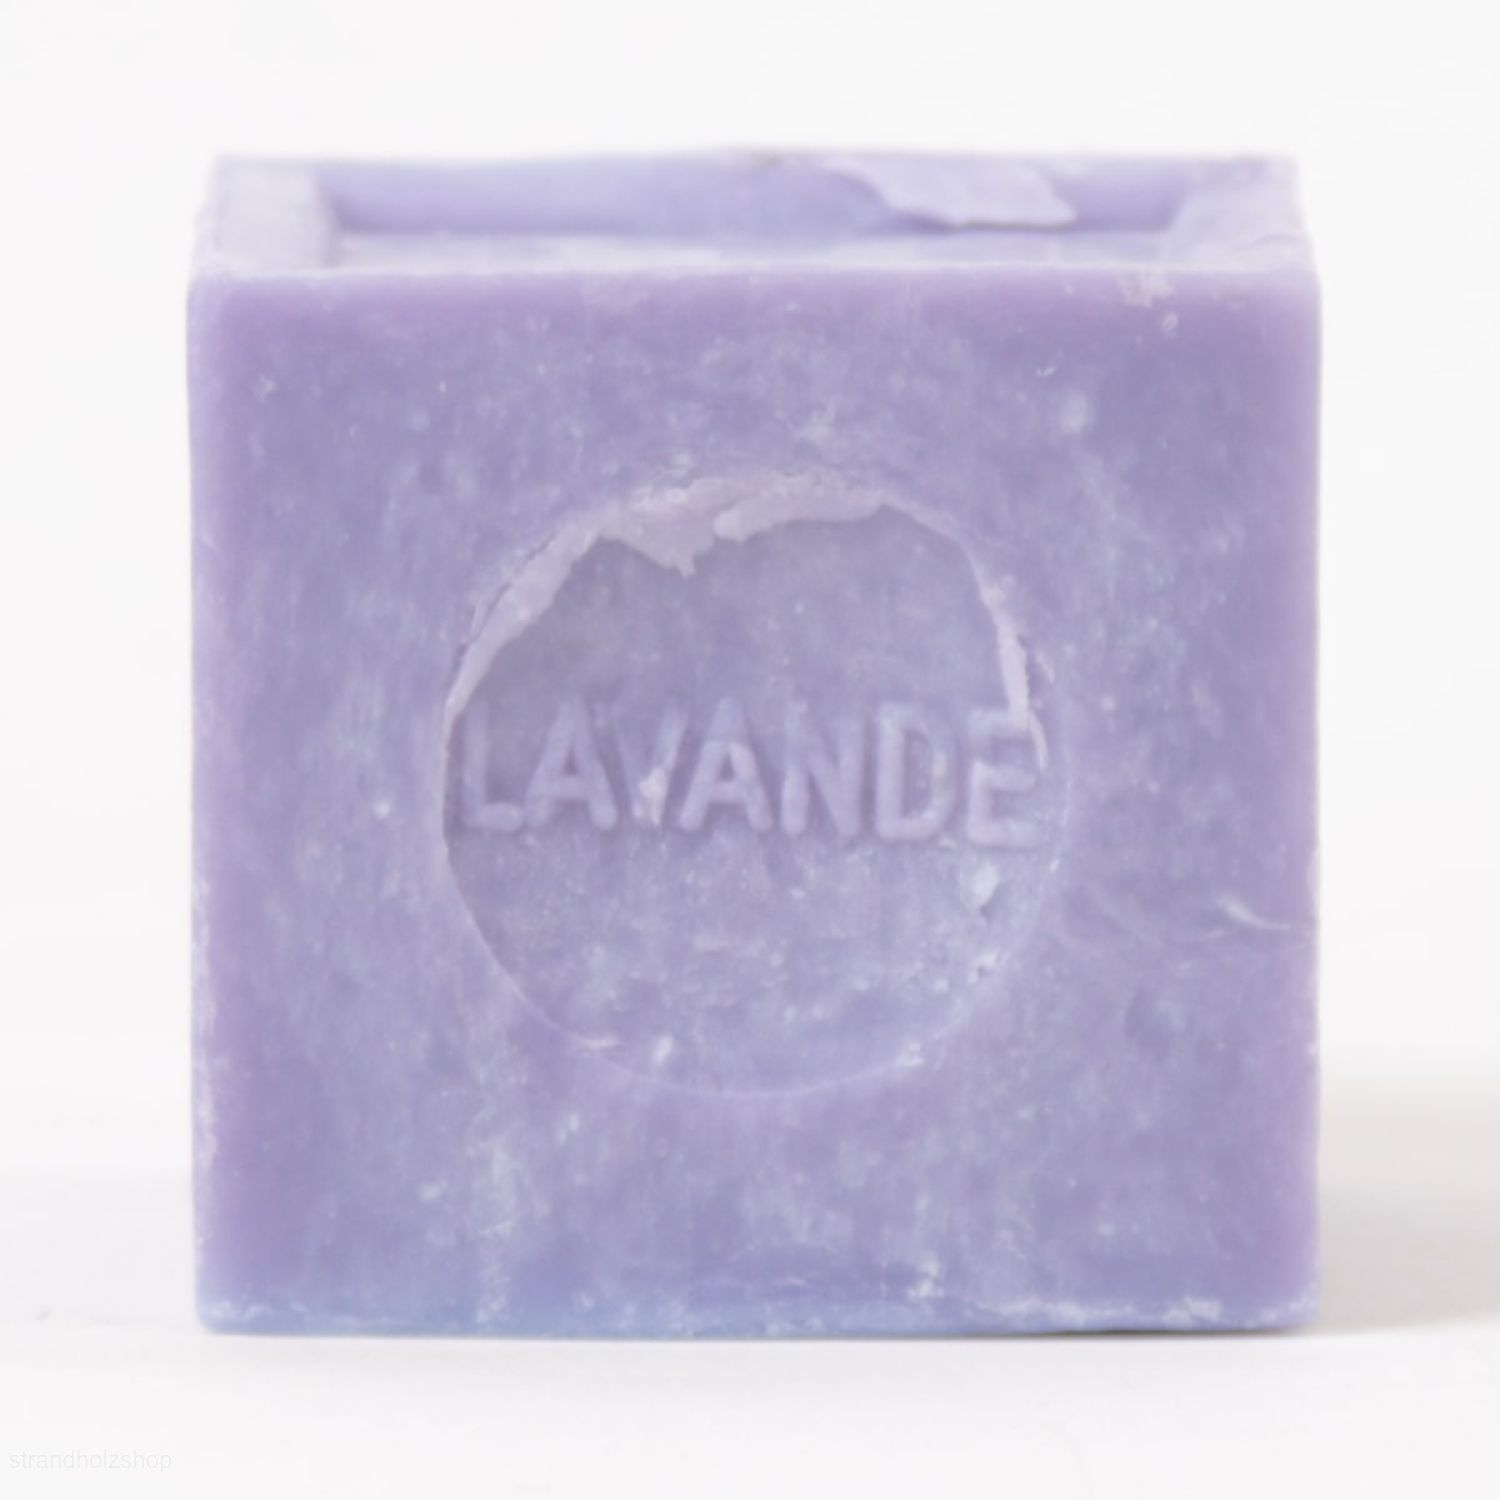 Cube_Lavendel_300g_view02